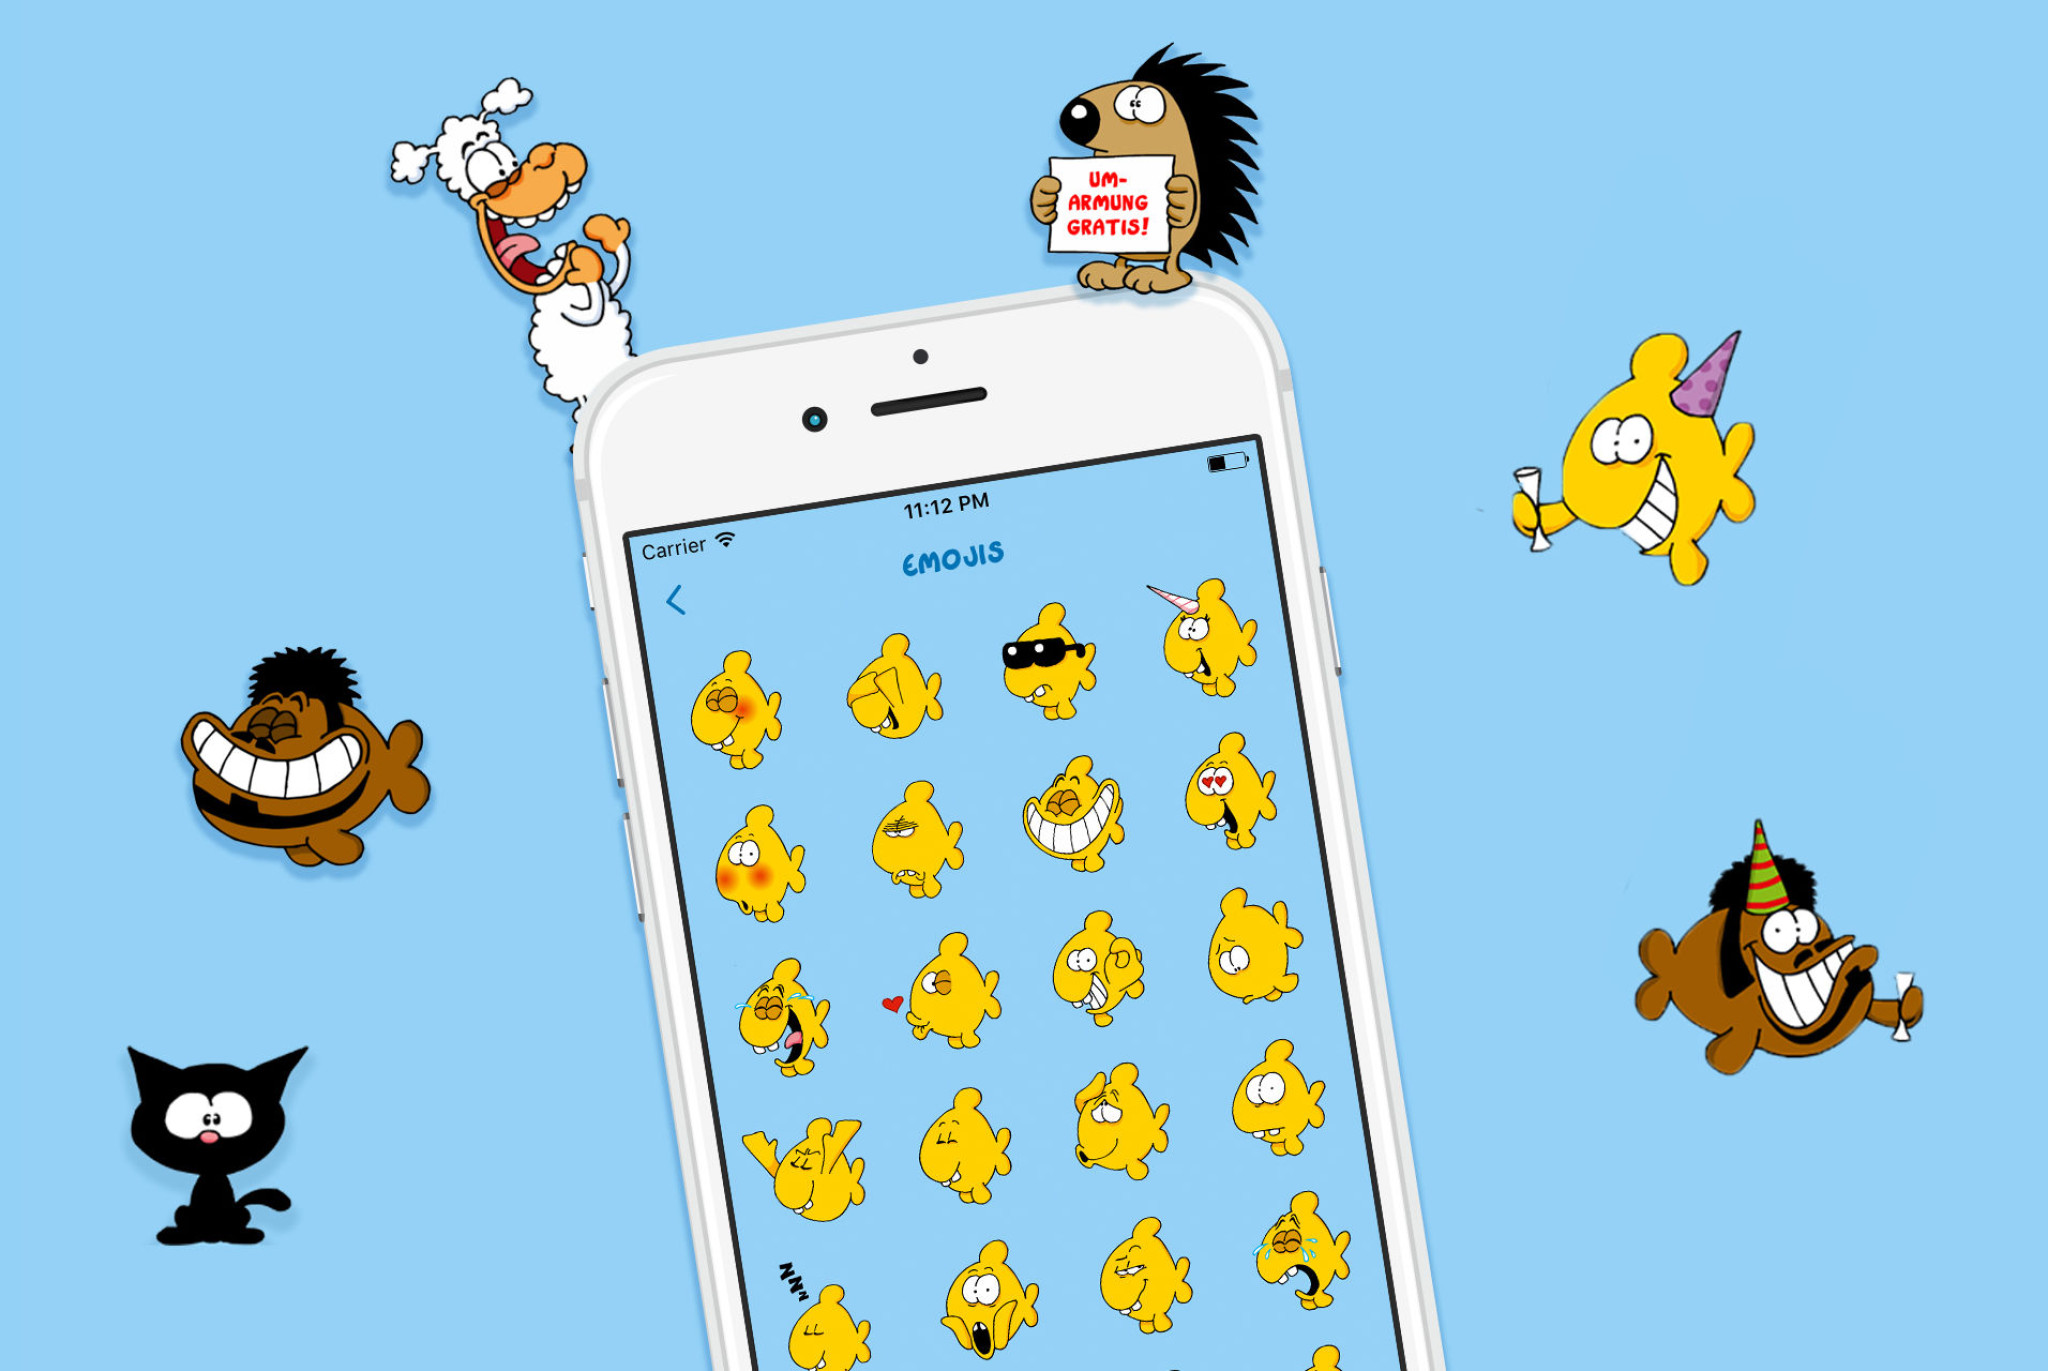 Erste Keyboard App von Ralph Ruthe mit Emojis und Stickern der beliebten Cartoons